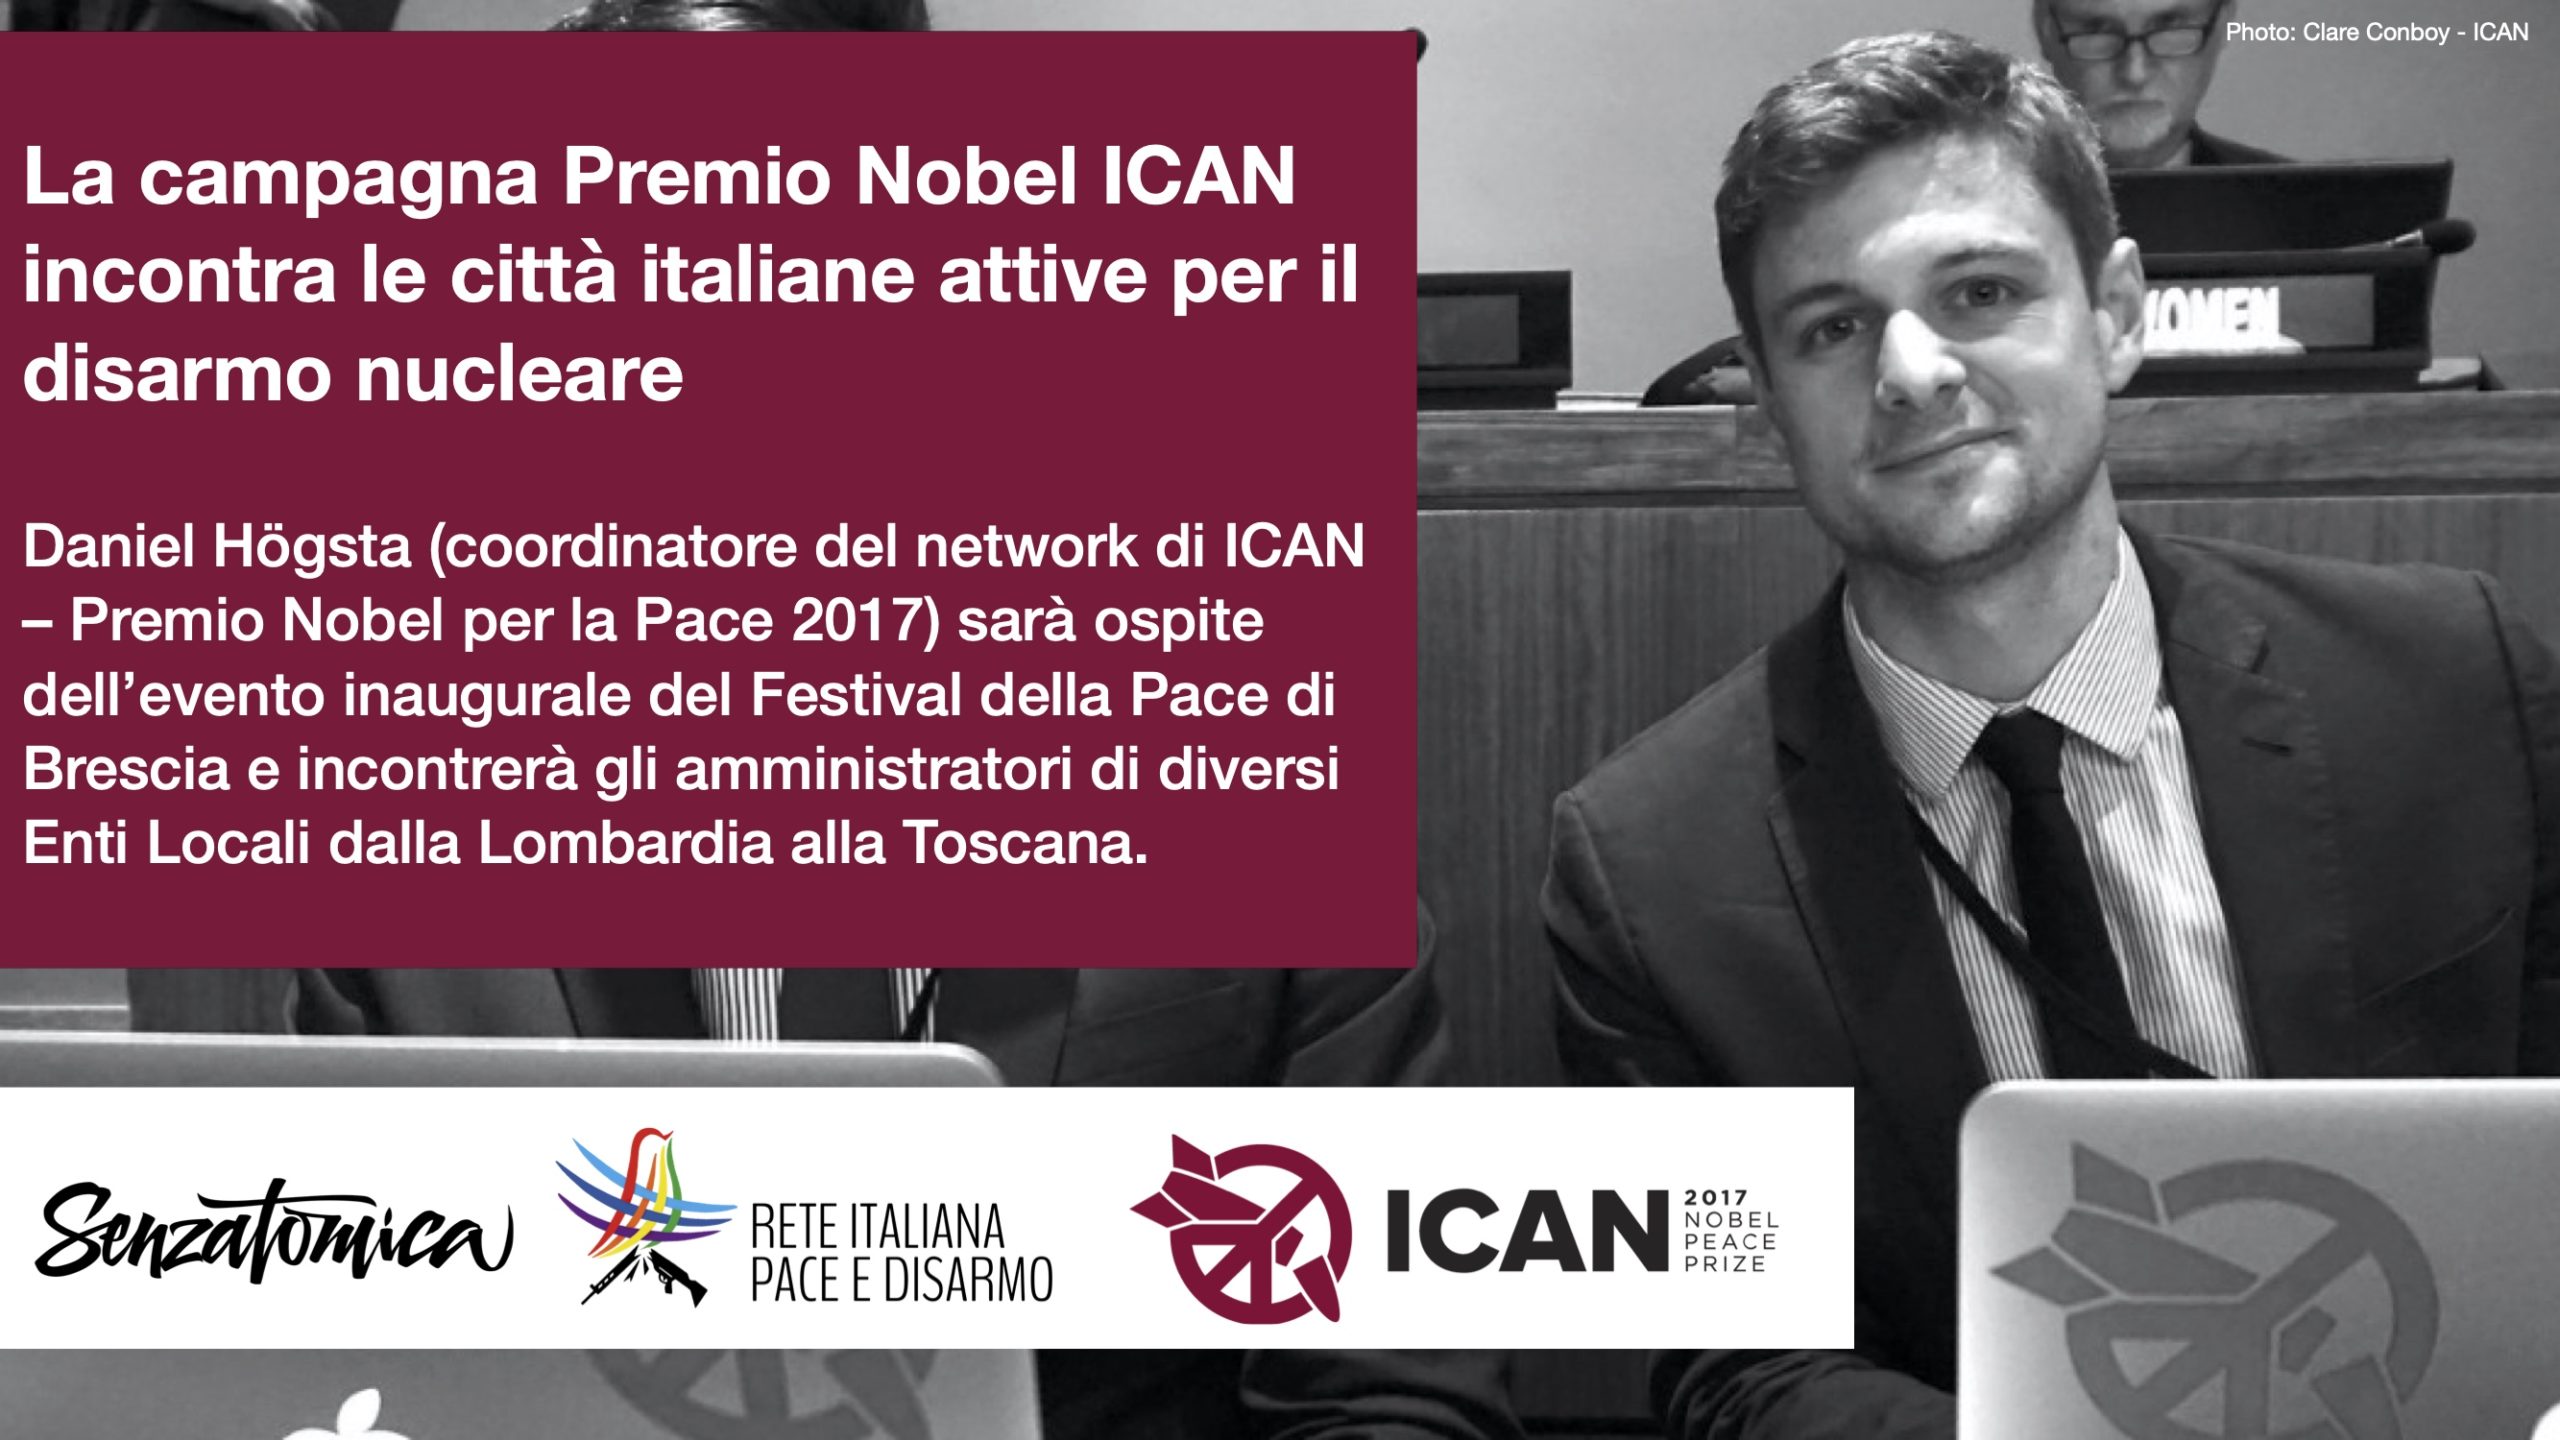 La campagna Premio Nobel ICAN incontra le città italiane attive per il disarmo nucleare